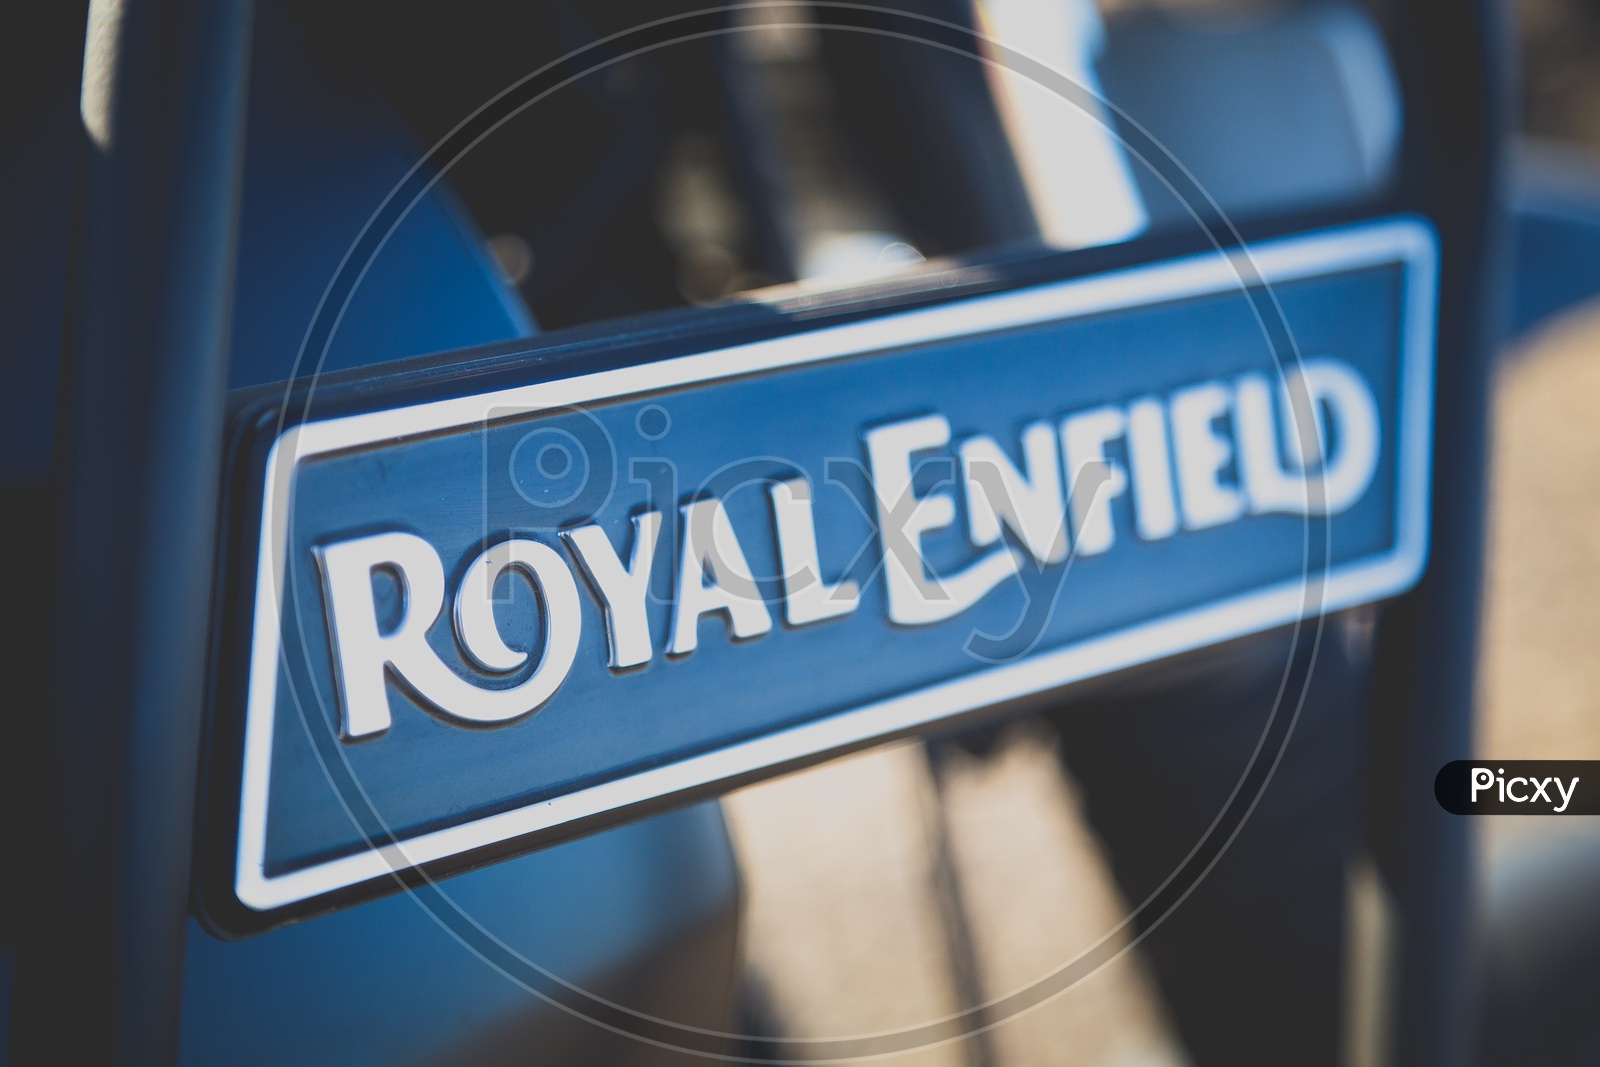 Royal Enfield Name Plate On Himalayan Bike